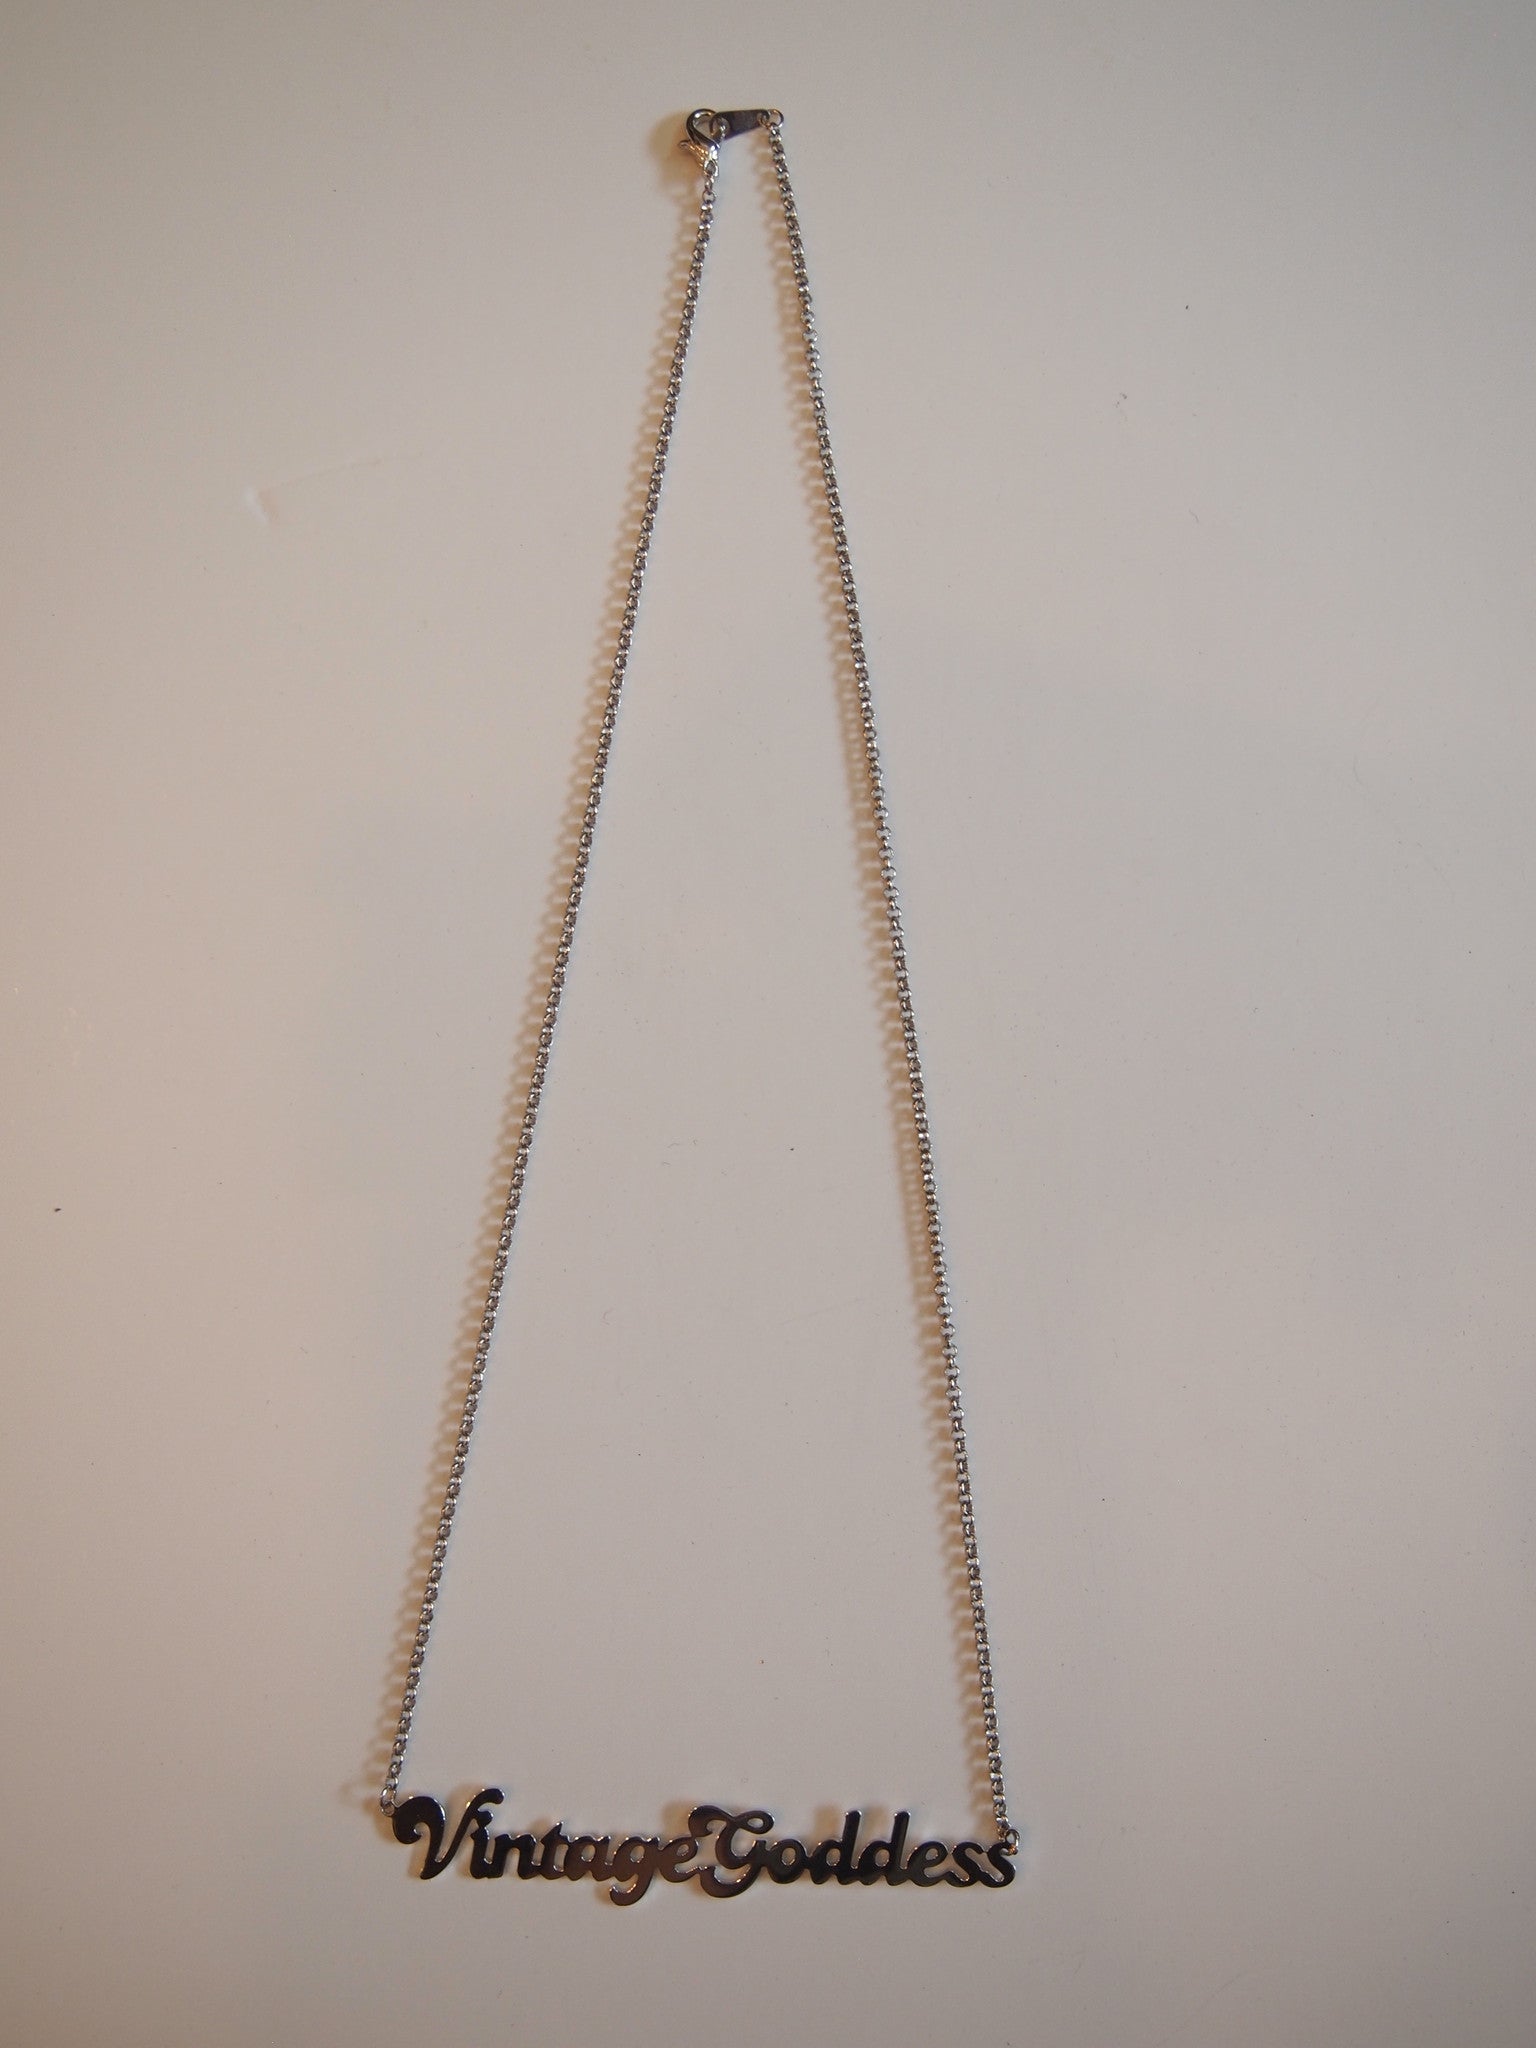 Handcut Nameplate Necklace -  Vintage Goddess